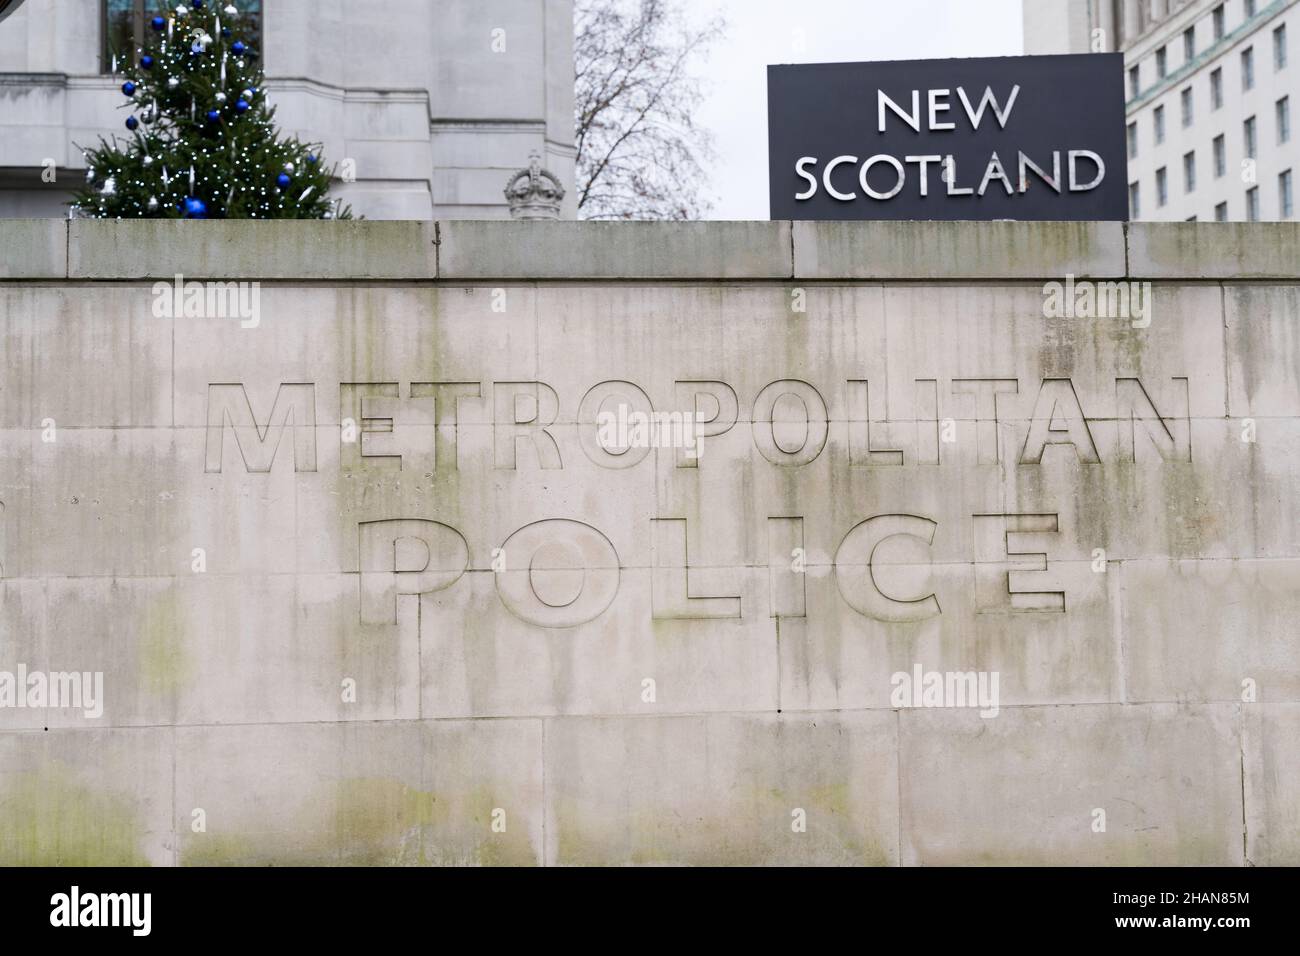 Londres Westminster Royaume-Uni.13 décembre 2021.Les manifestants se sont rassemblés devant la Chambre du Parlement et ont tenu divers messages sur la plaque, avec une police lourde p Banque D'Images